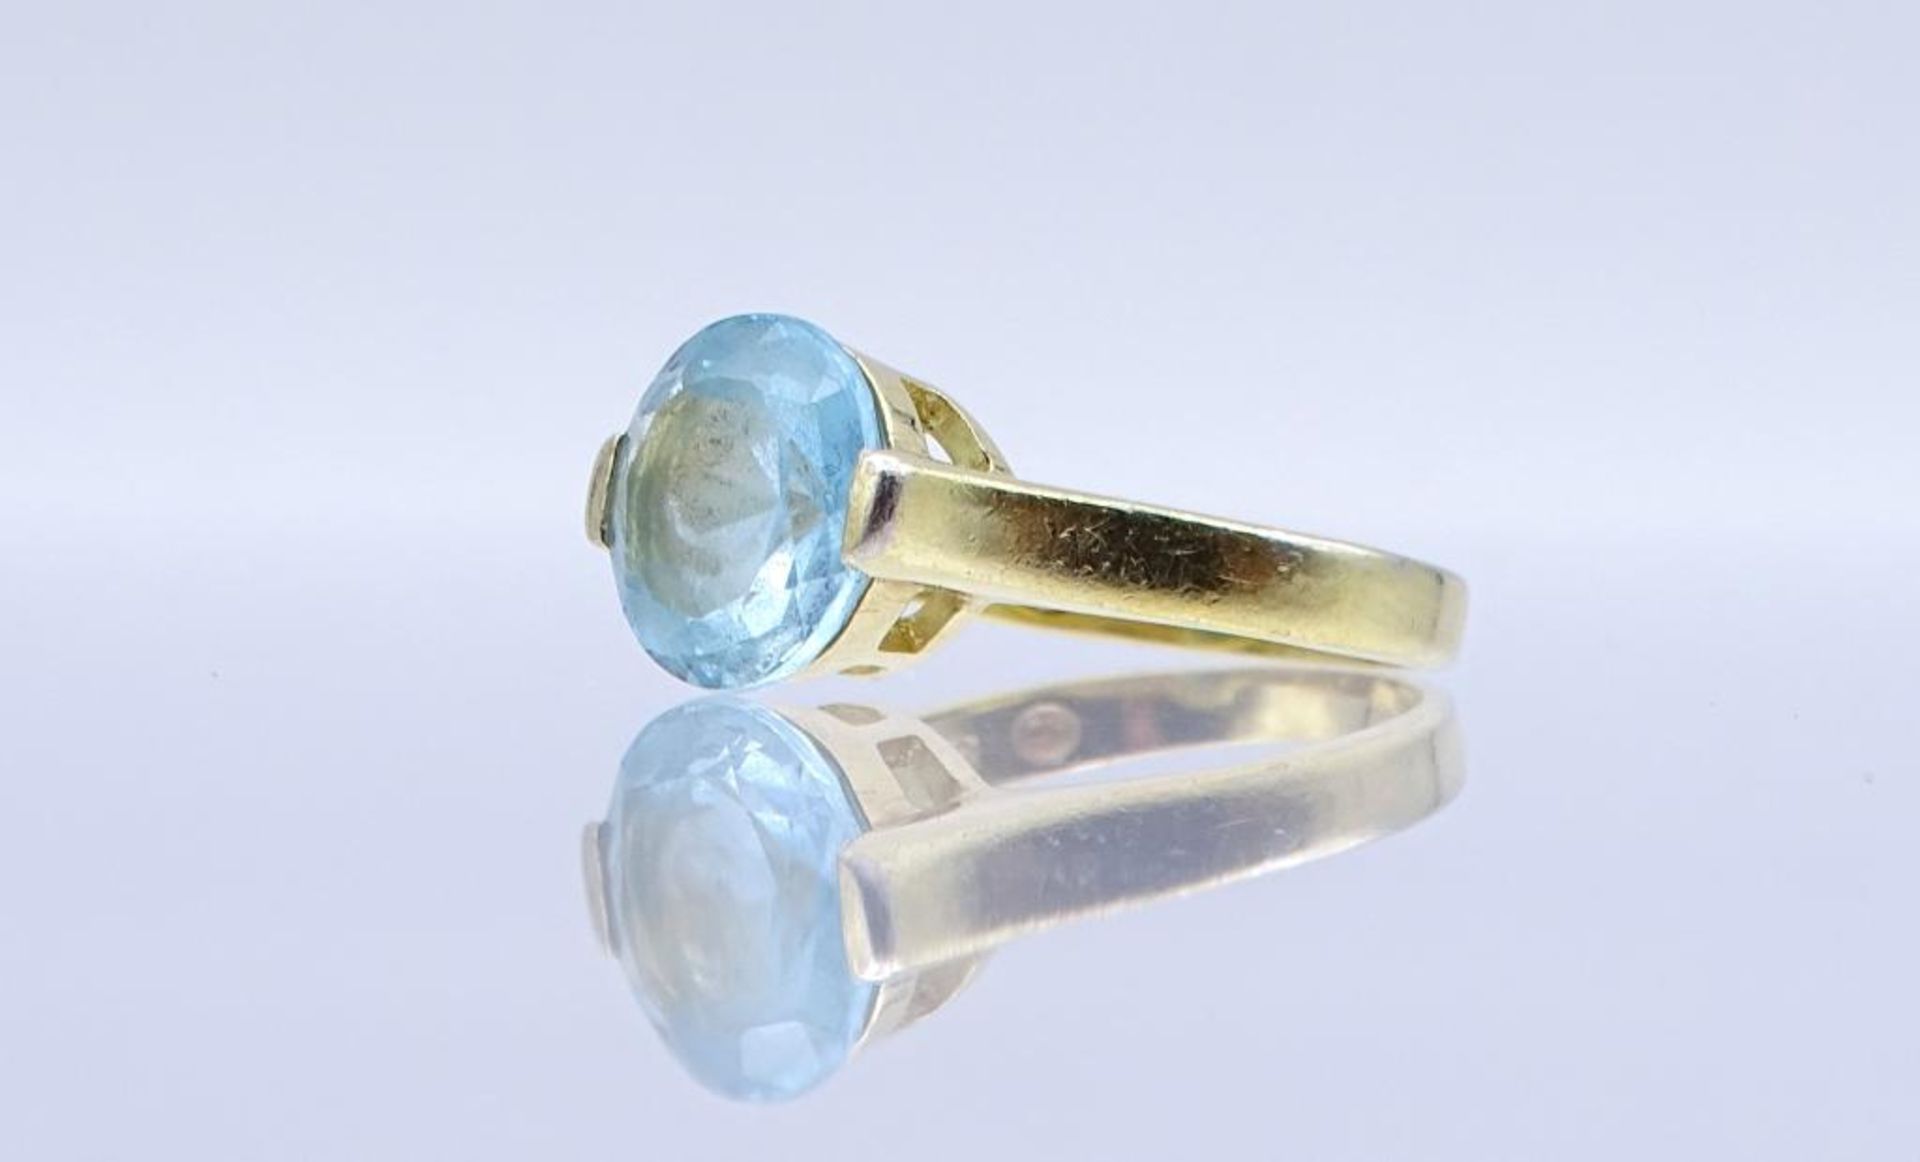 Sterling Silber Ring 925/000 mit einen runden facettierten hellblauen Stein, vergoldet, 3,4gr., RG - Bild 3 aus 3